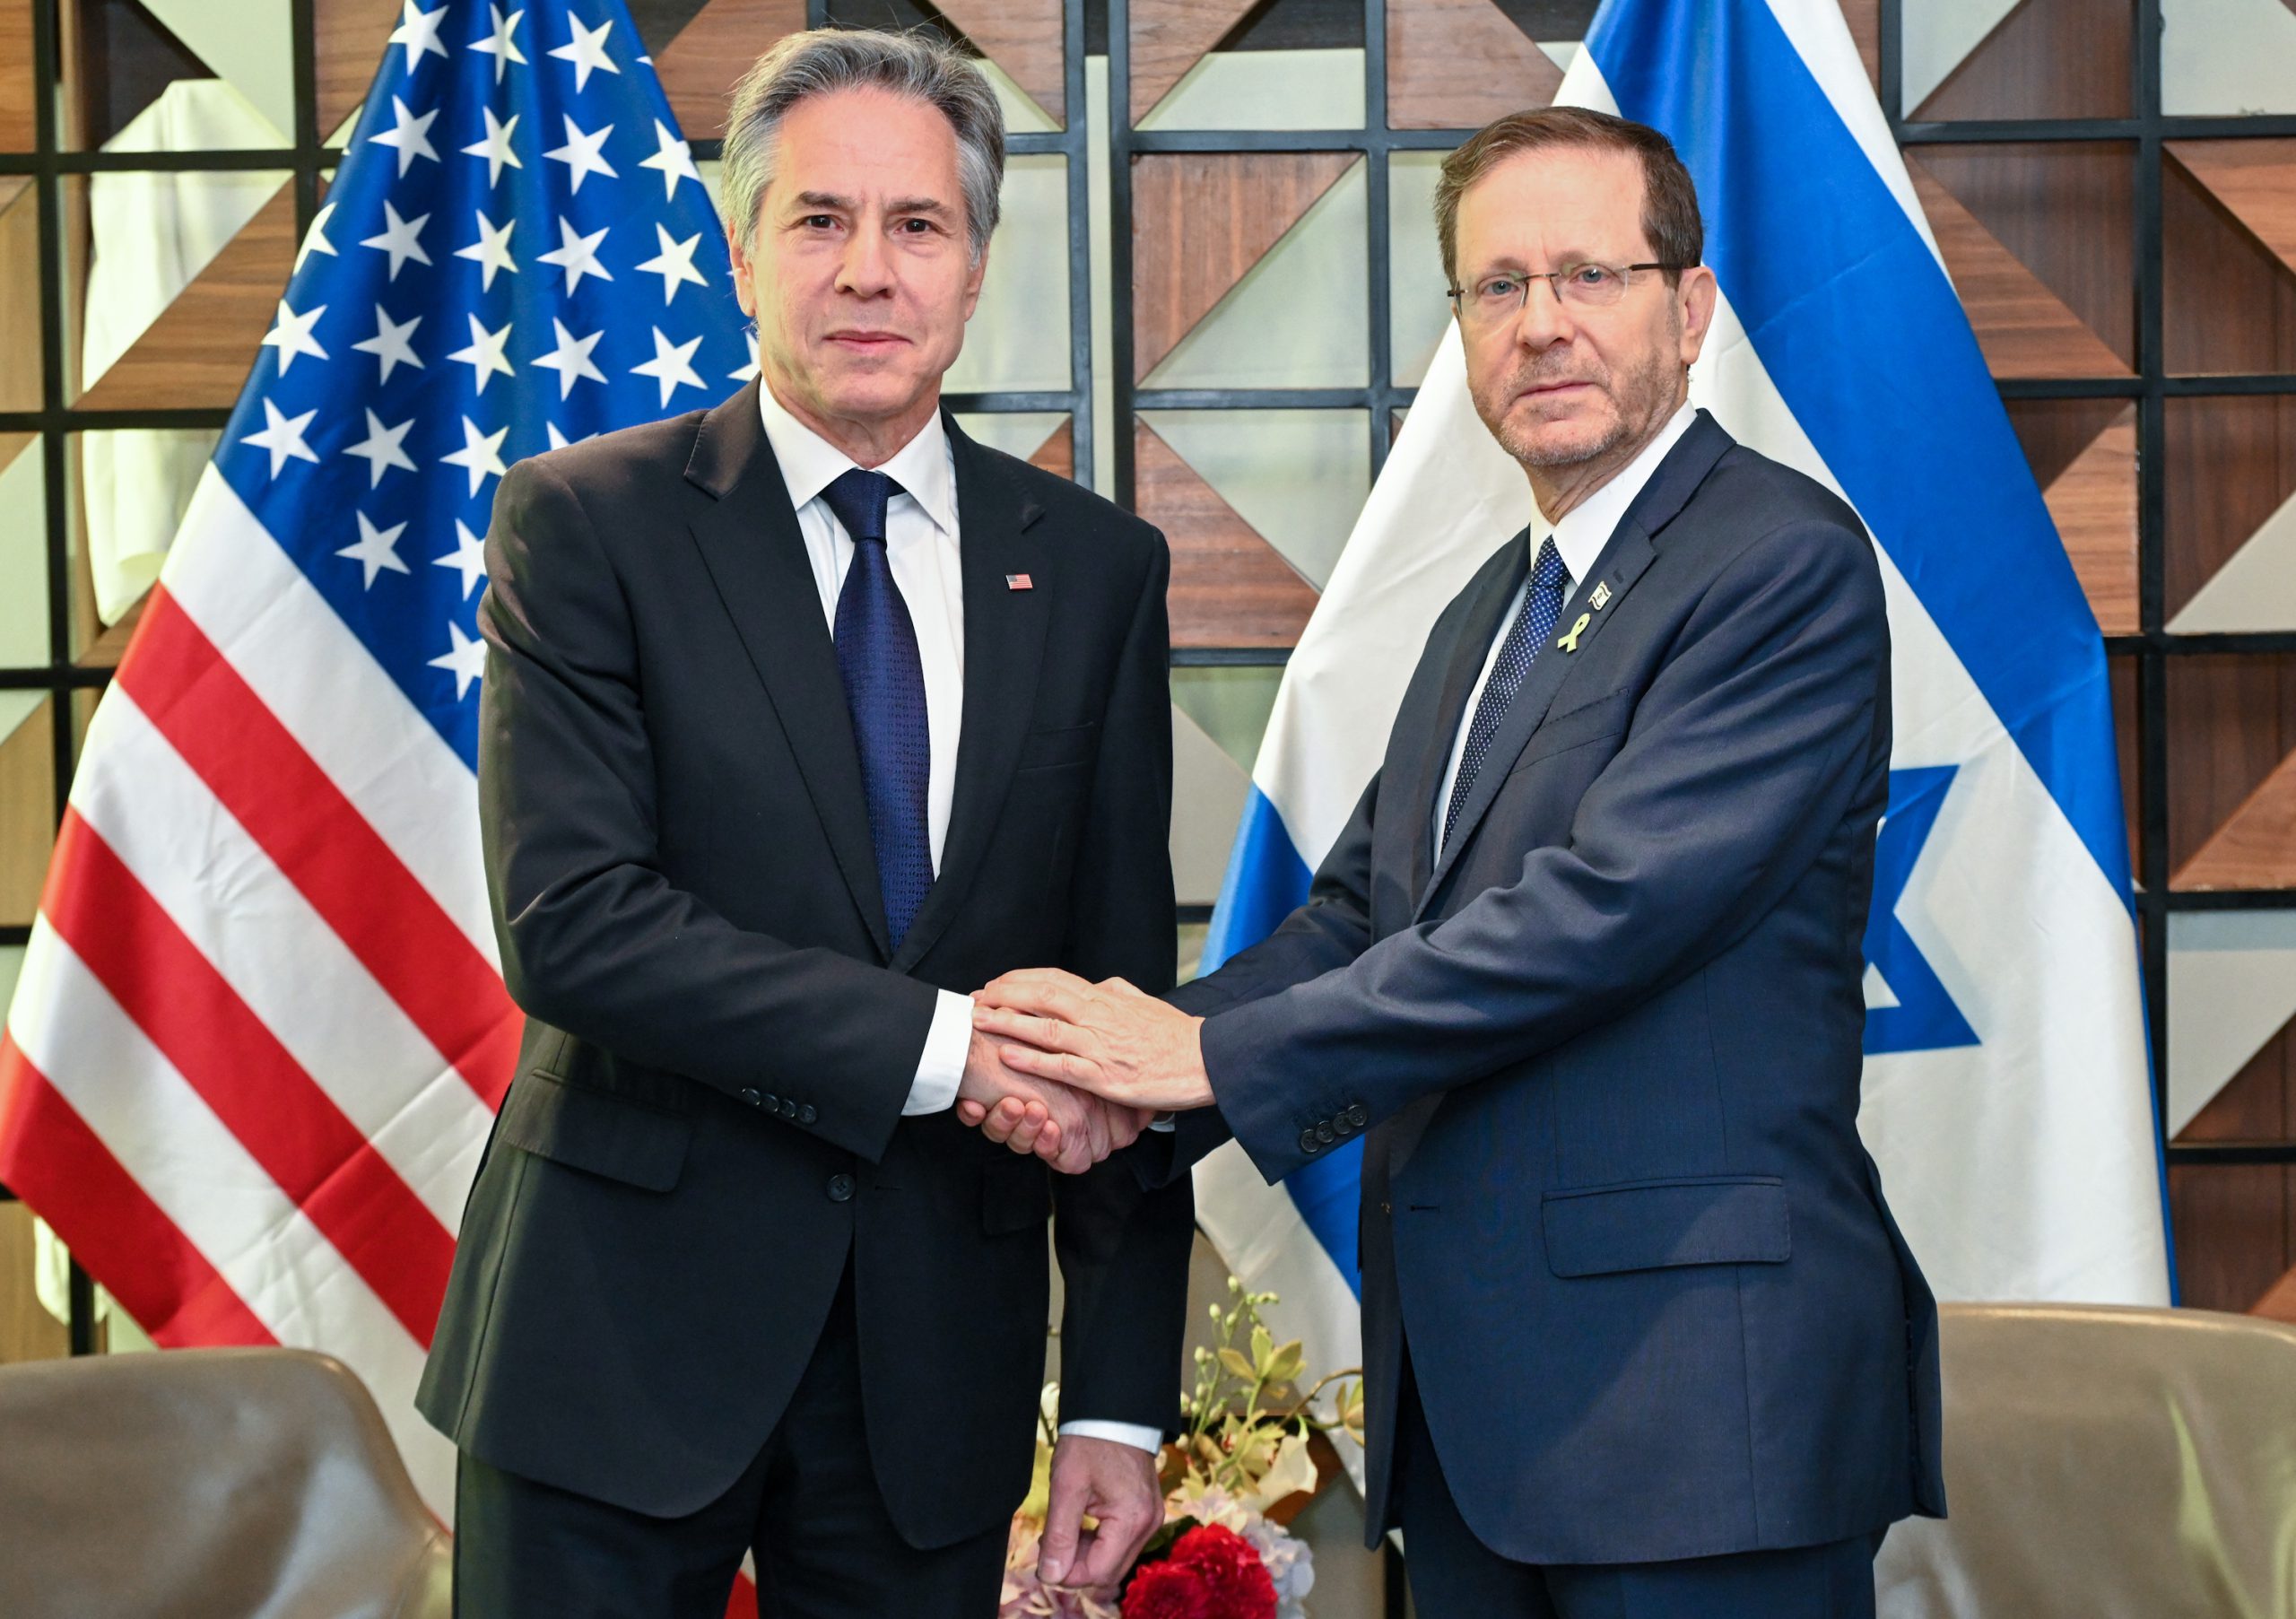 נשיא המדינה נפגש עם מזכיר המדינה האמריקאי